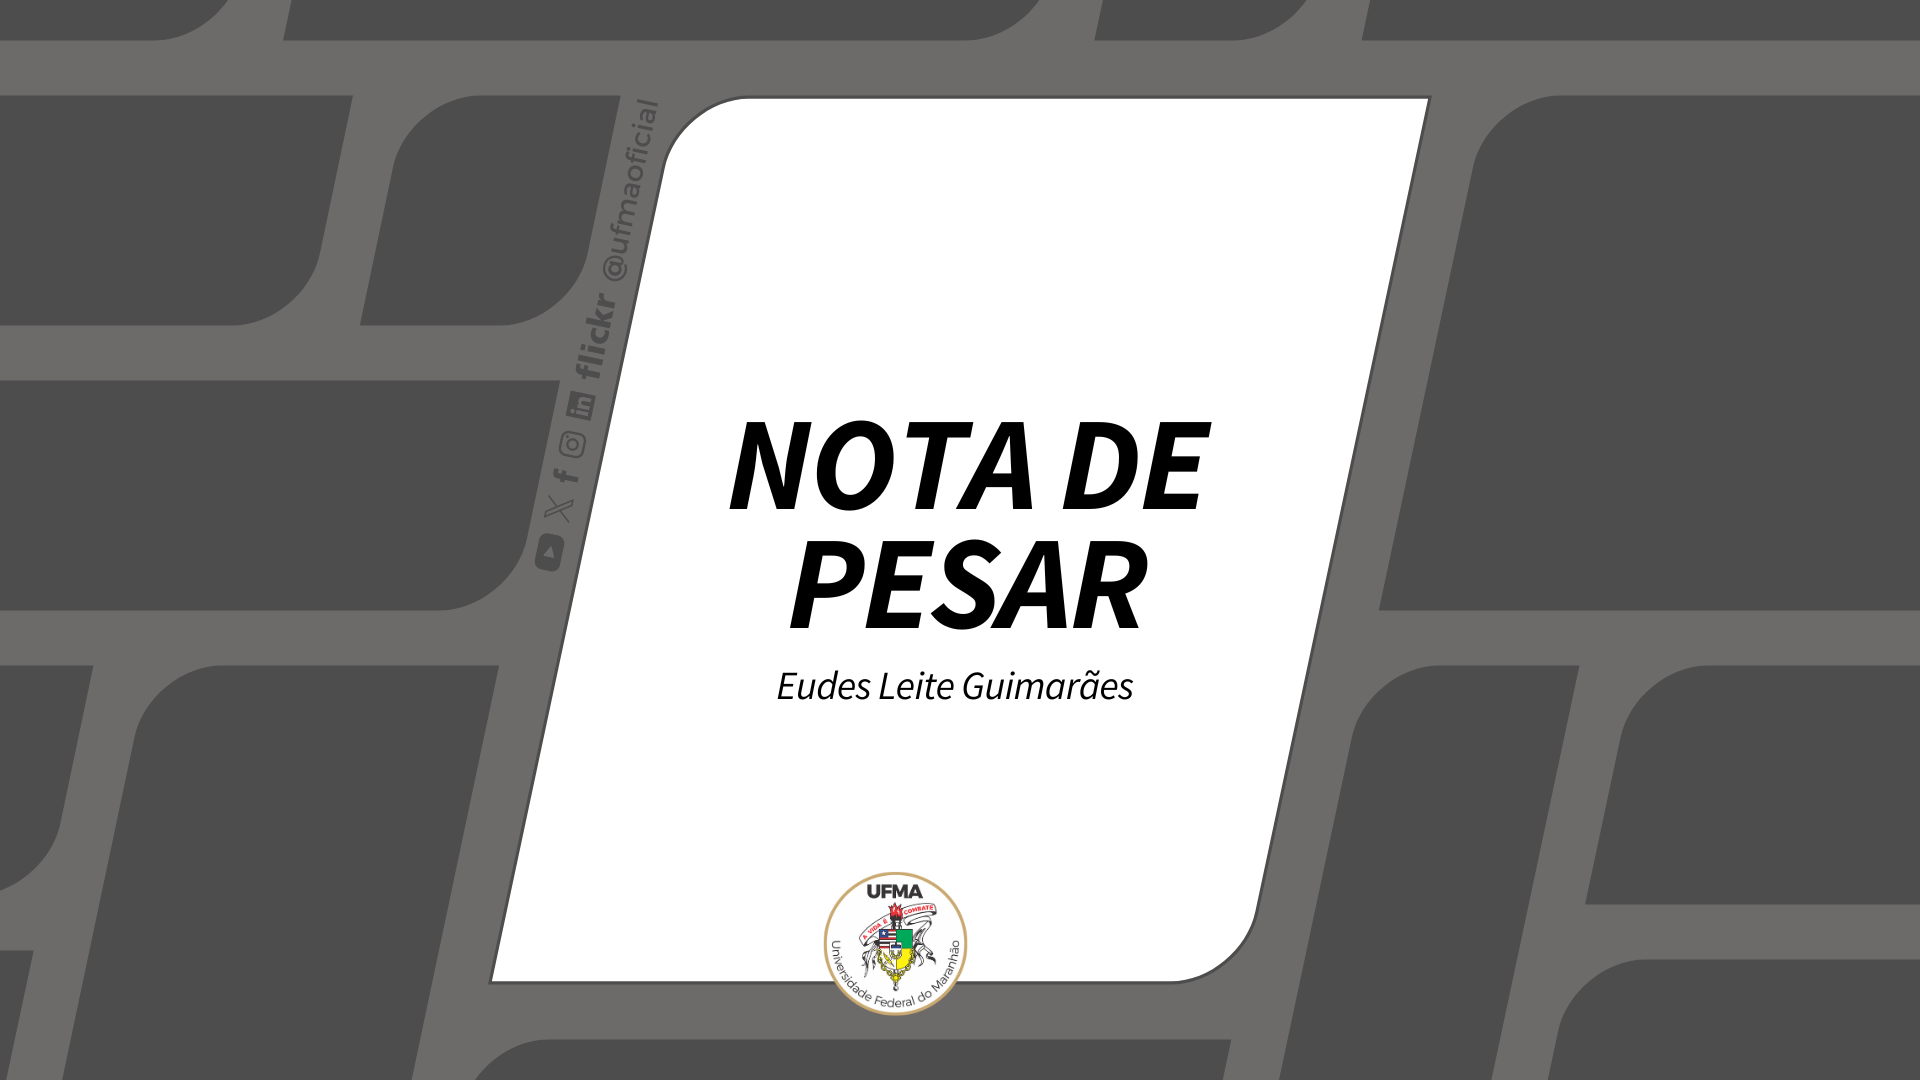 NOTA DE PESAR - Eudes Leite Guimarães